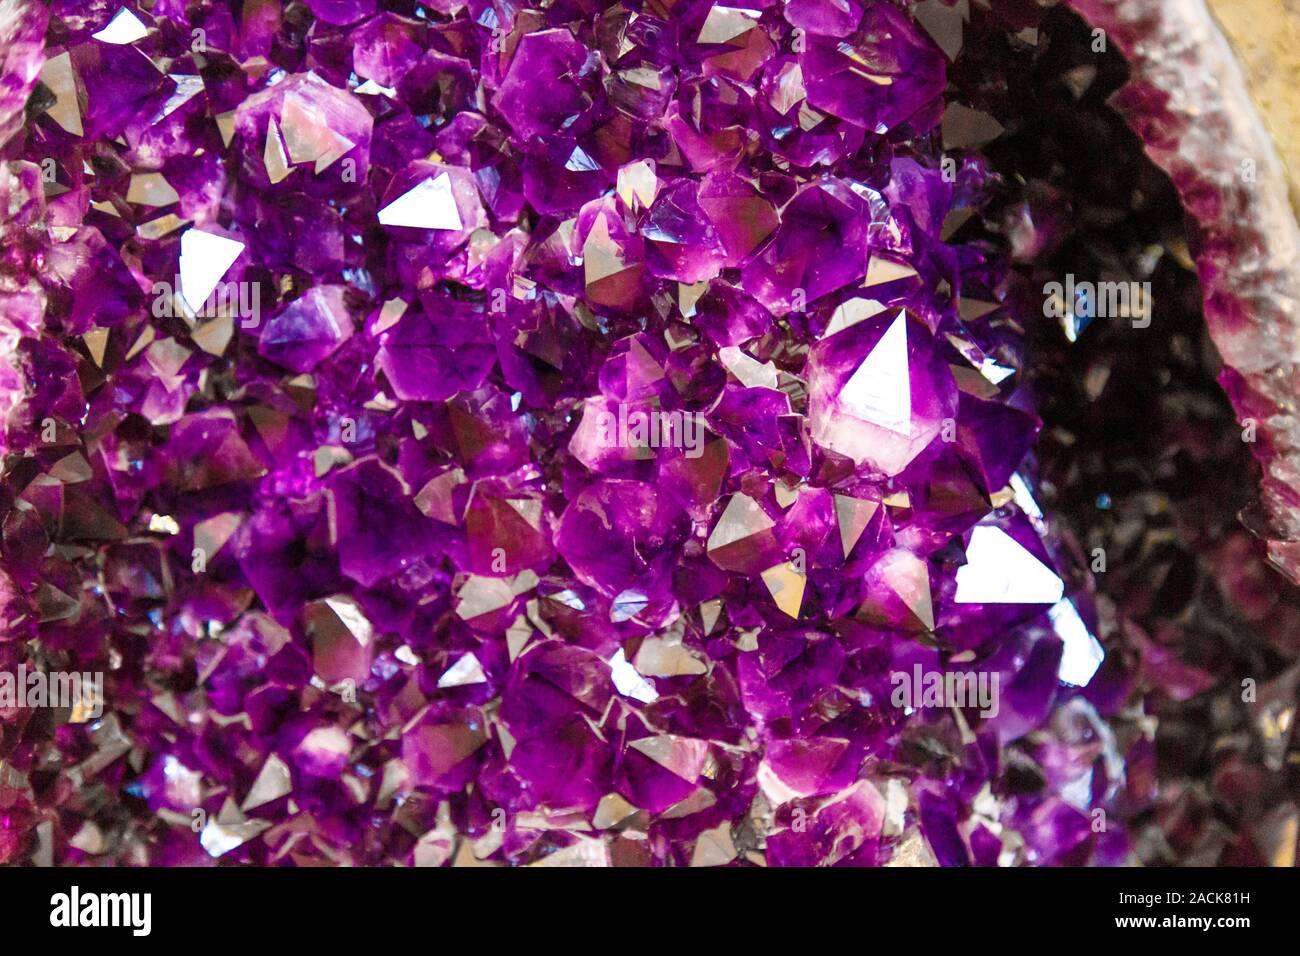 Amethyst lila Kristall. Mineralische Kristalle in der natürlichen Umwelt.  Textur von Edel- und Halbedelsteinen Edelstein. Edelsteine Stockfotografie  - Alamy